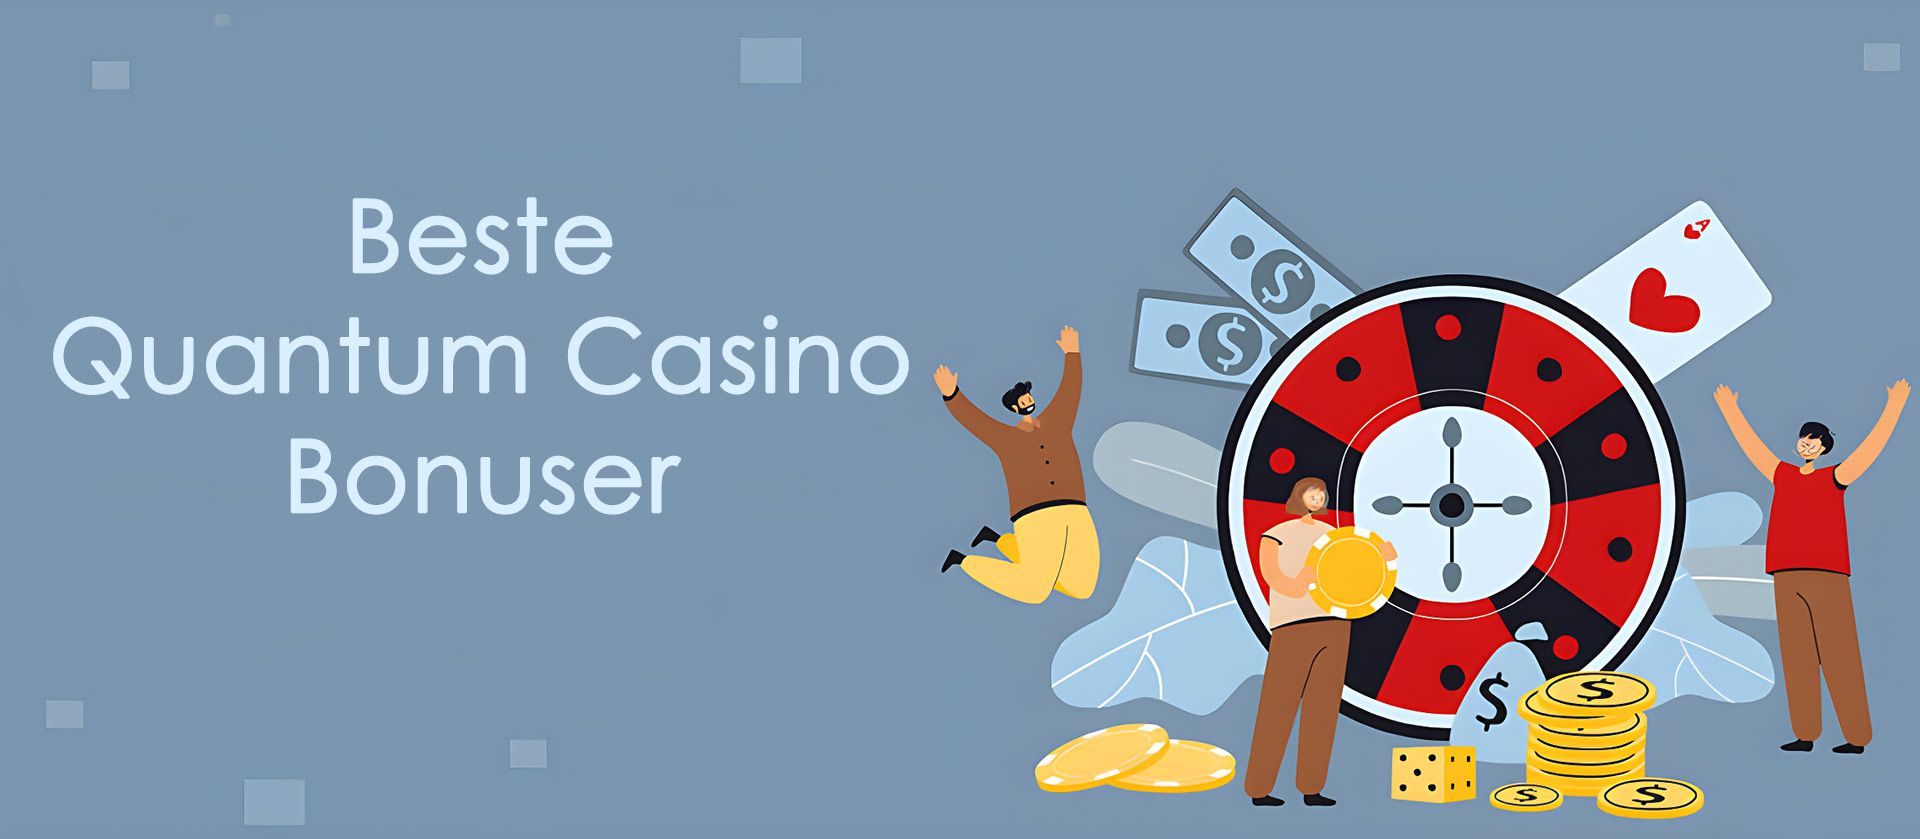 Beste Quantum casino bonuser i Norge.